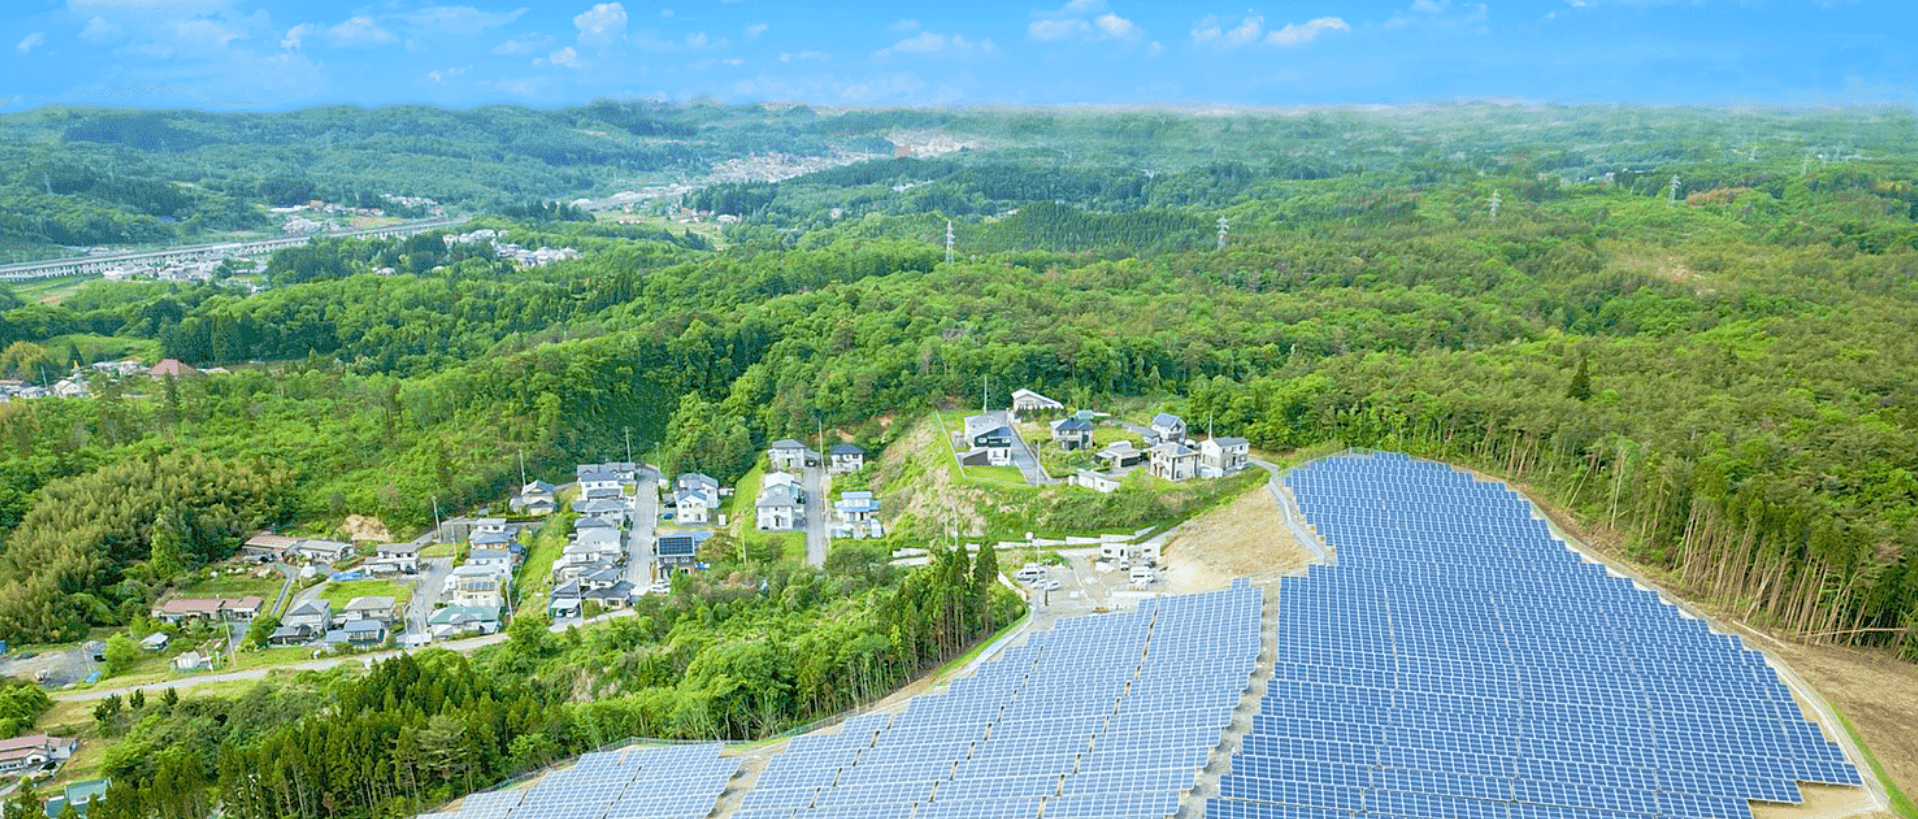 GCPホールディングスは太陽光発電を中心に、ソーラー再生可能エネルギー、グリーン電力発電、再エネプロダクト、発電所運営管理とO＆M事業を展開し、多様なエネルギーソリューションを提供しています。持続可能な未来に向け、継続的な取り組みを進めています。